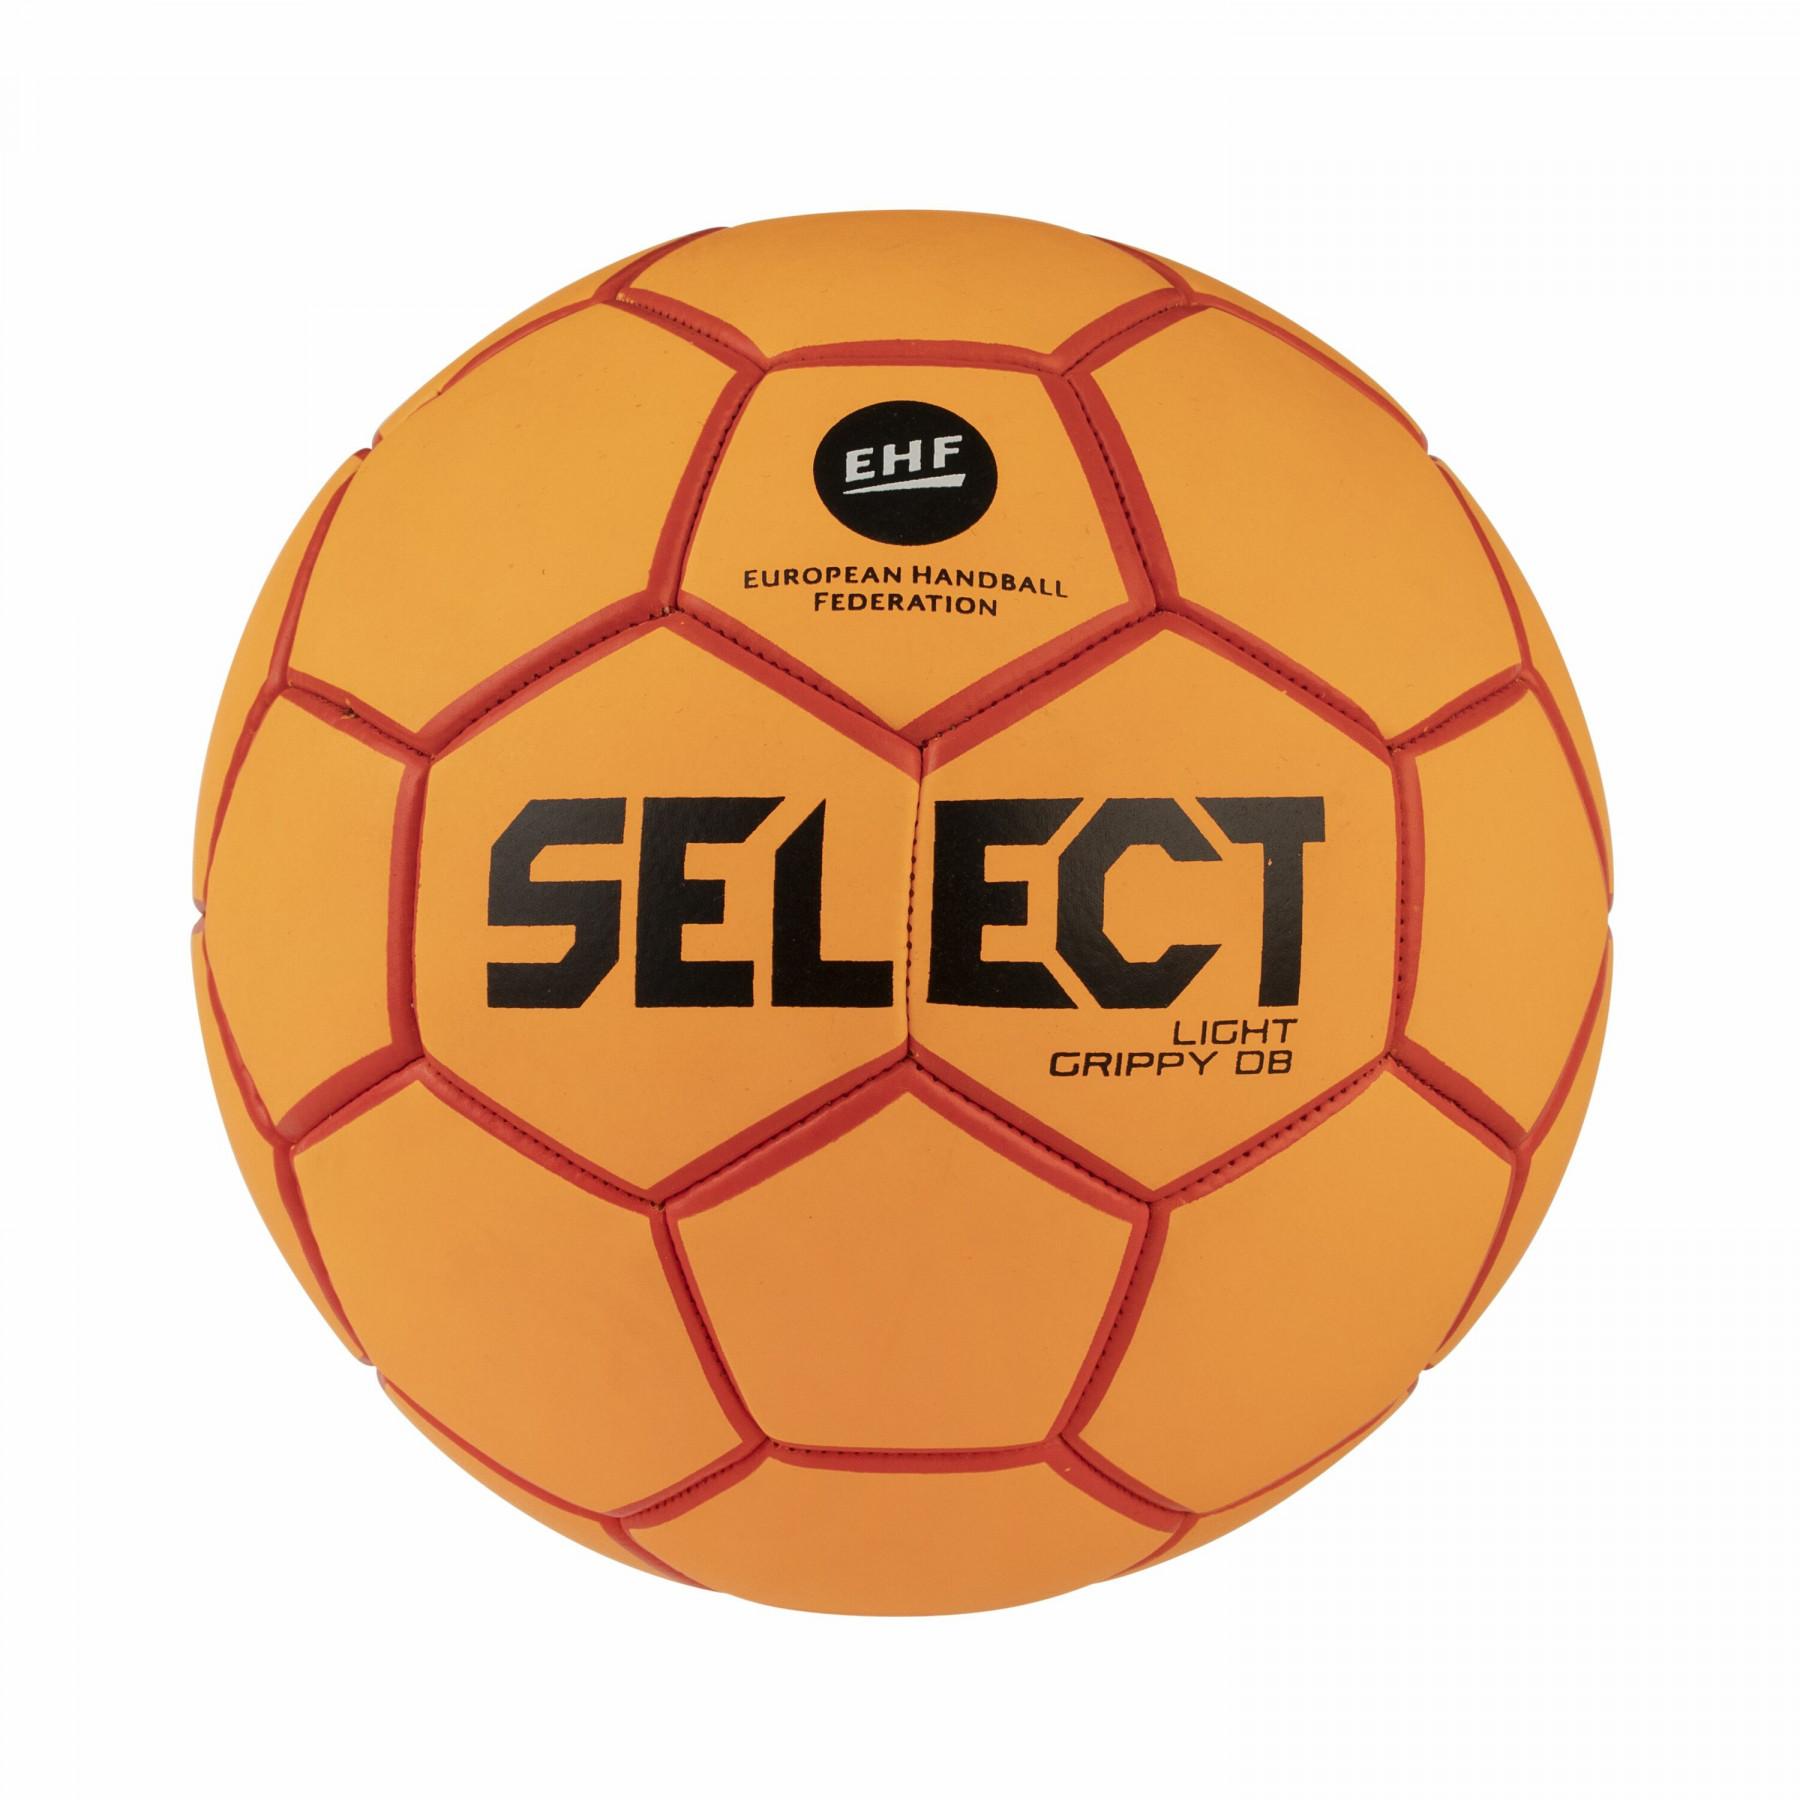 Handball Select Light grippy